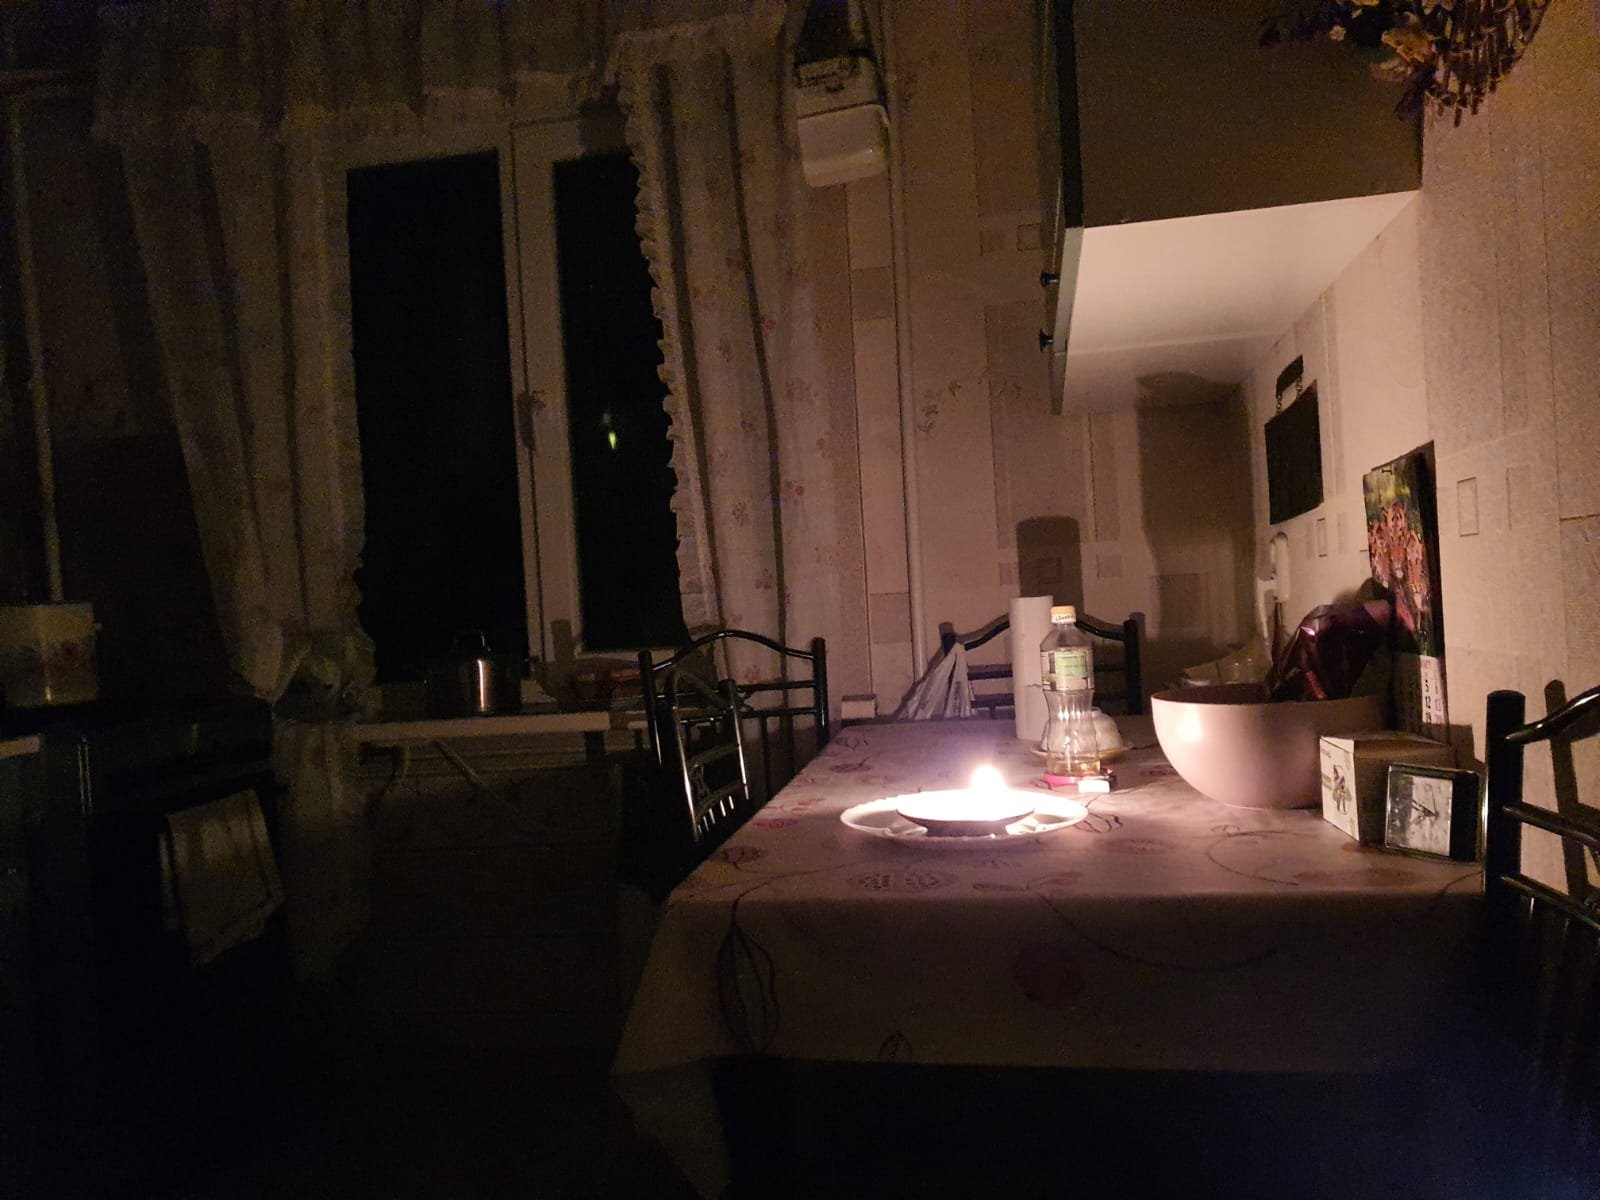 Casa com uma vela acesa em meio à escuridão